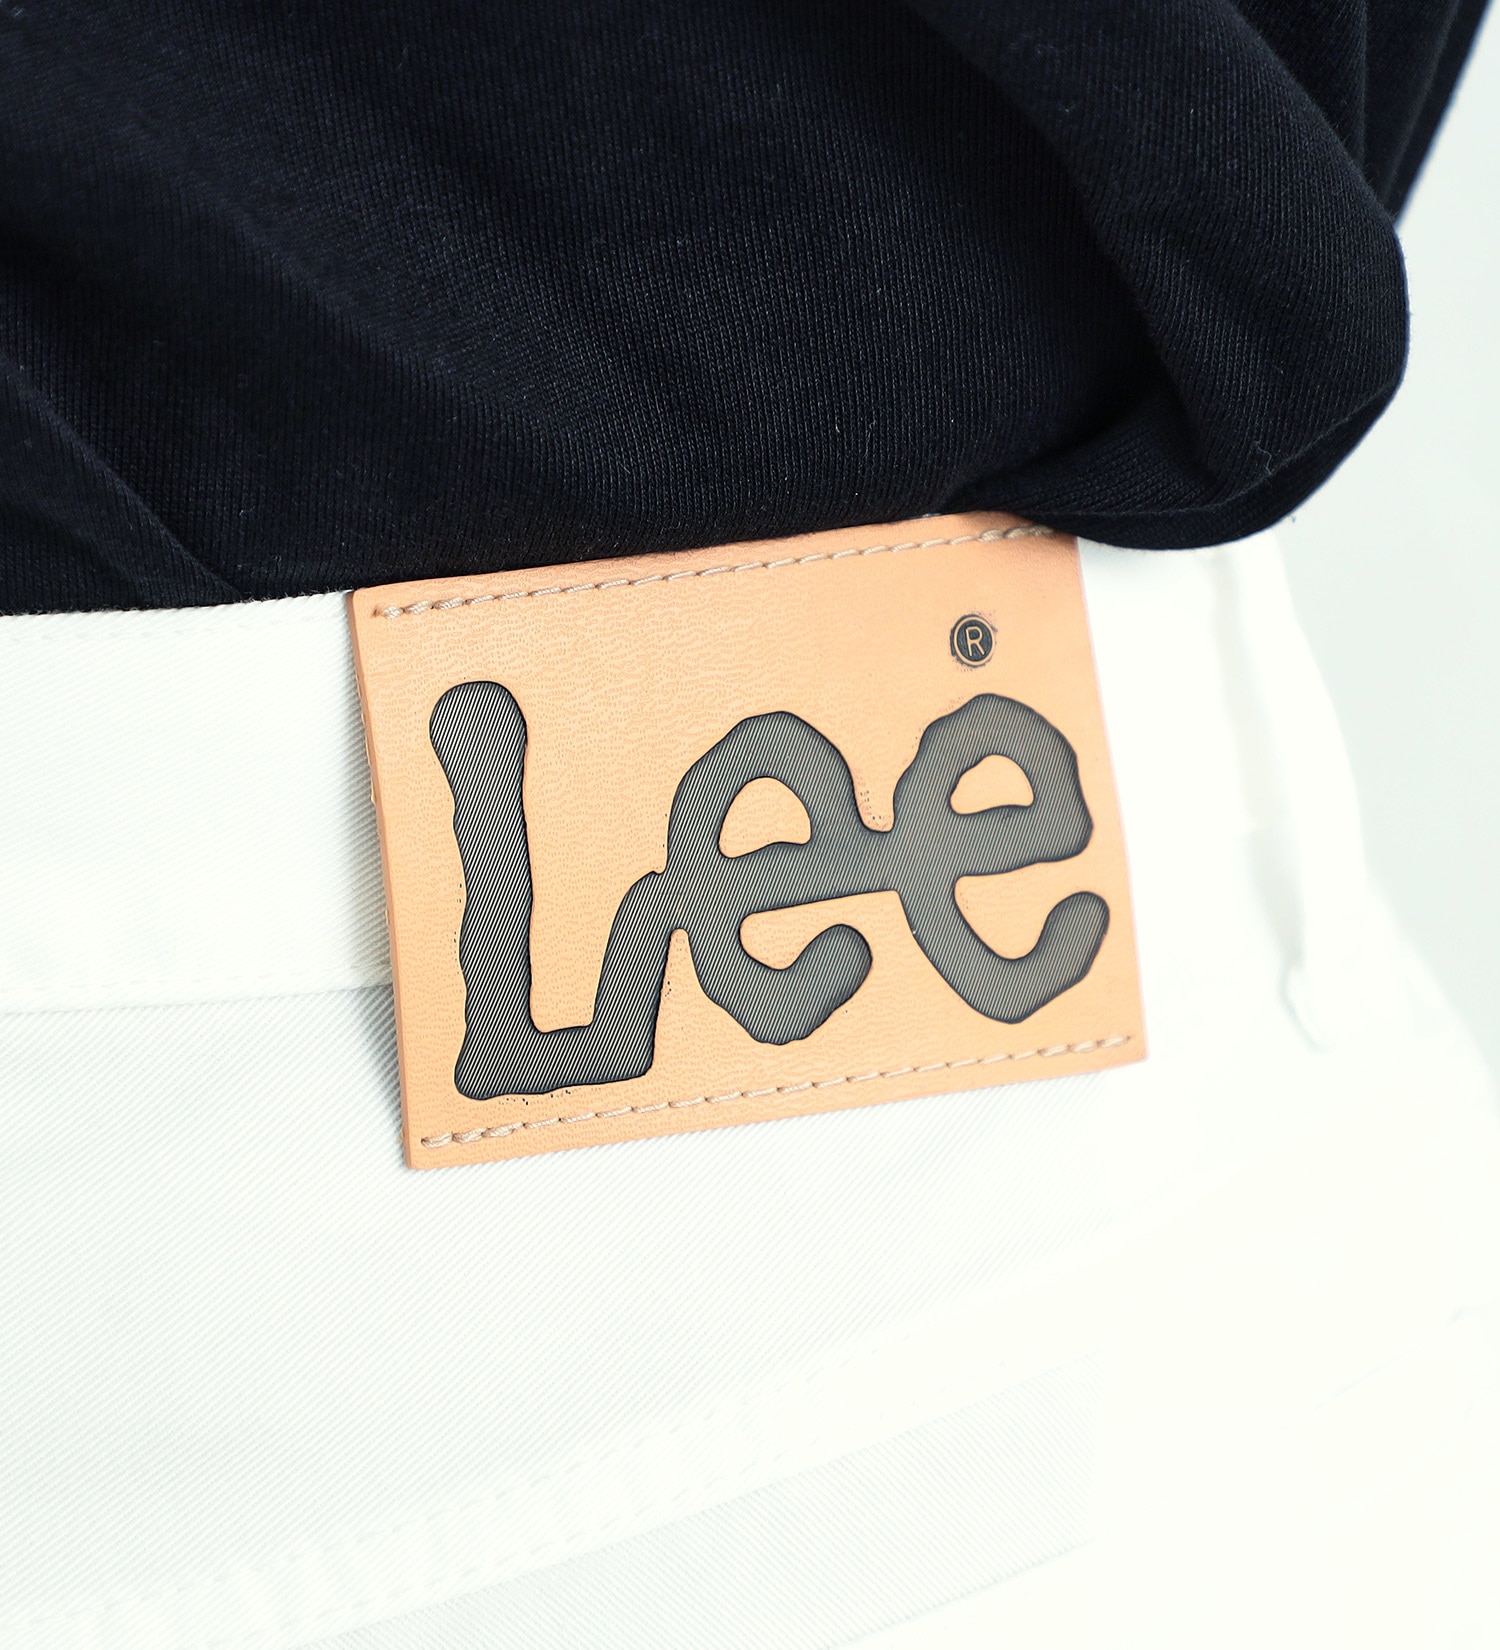 Lee(リー)の【涼・COOL】ドライタッチで涼しく快適AMERICAN STANDARD 201 ストレート|パンツ/パンツ/メンズ|ホワイト